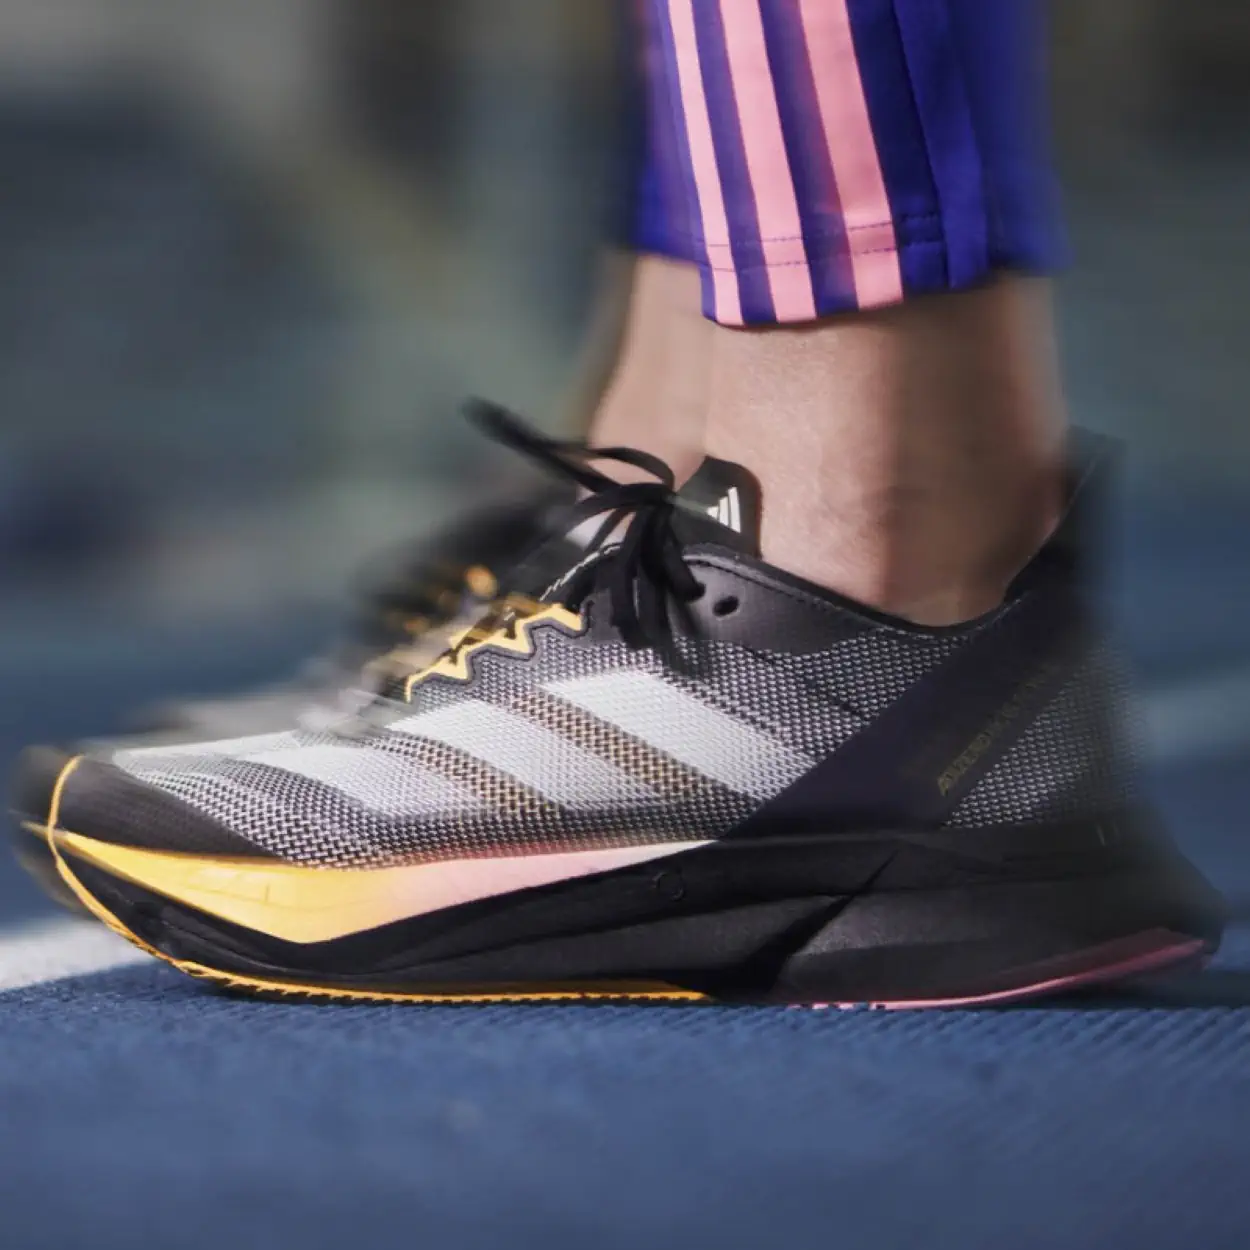 adidas et l'équipe de France d'athlétisme dévoilent leurs nouvelles tenues pour les prochaines compétitions